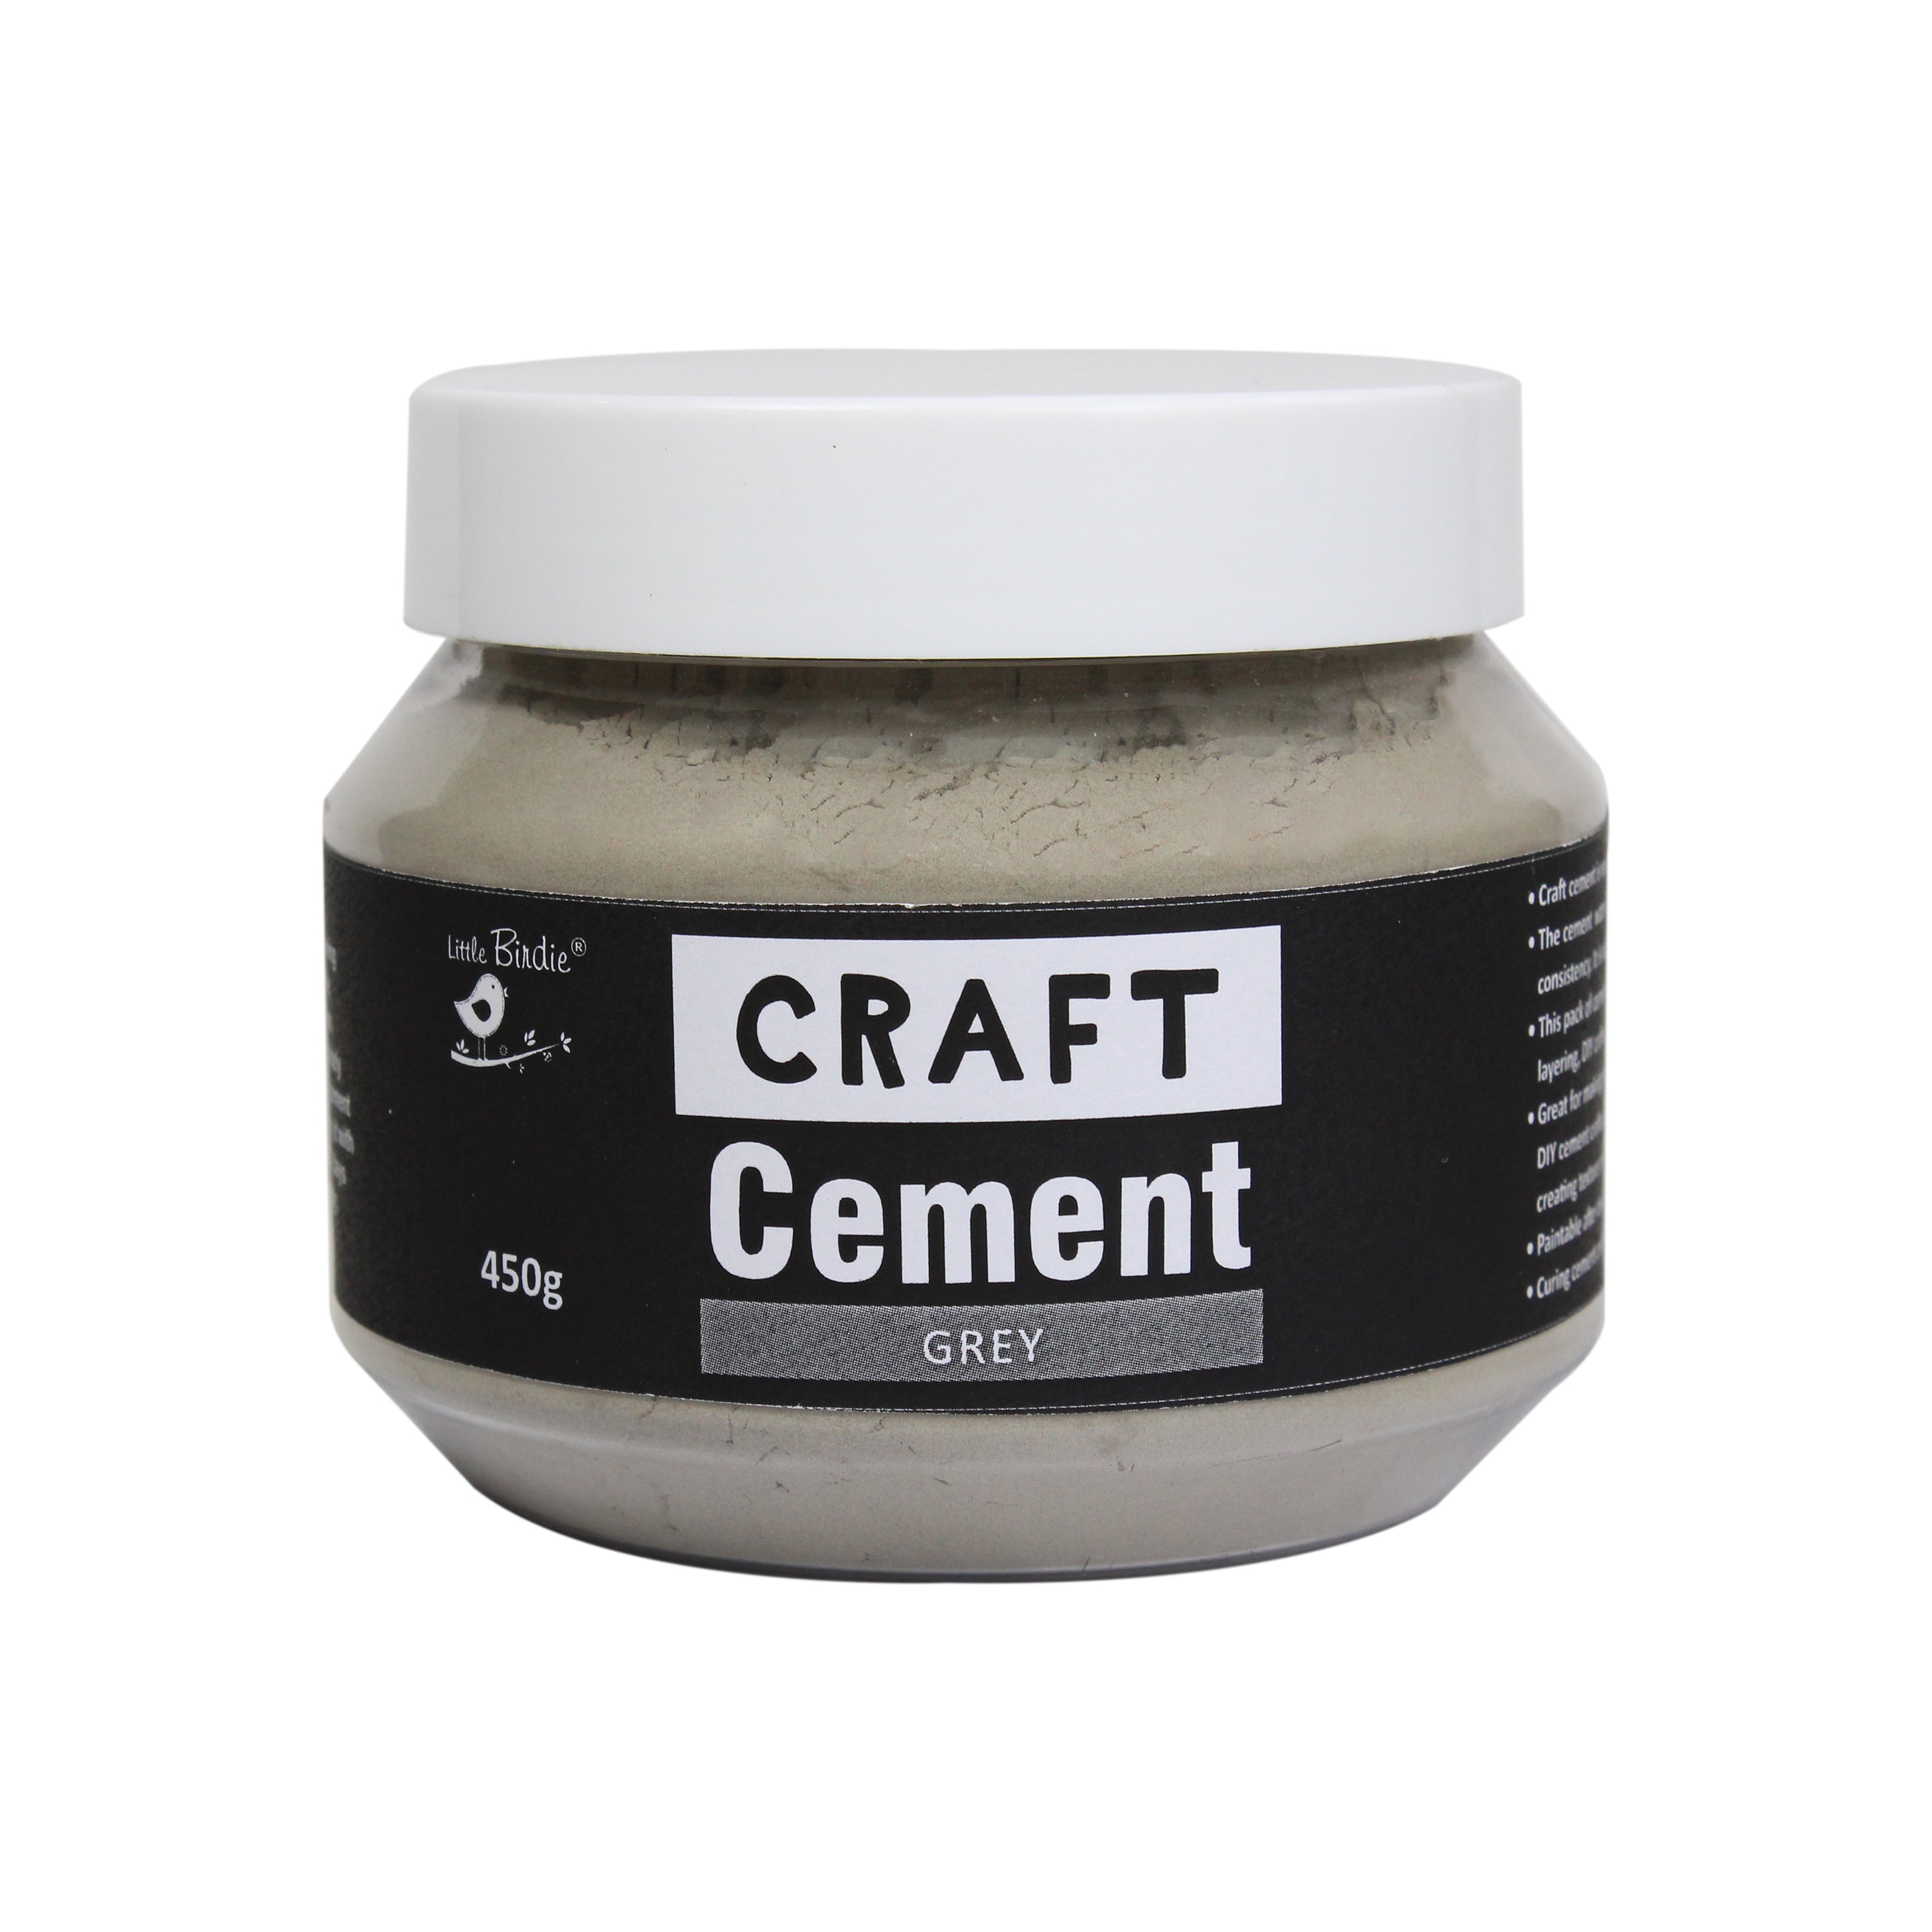 Little Birdie Craft Cement Grey - 450gm